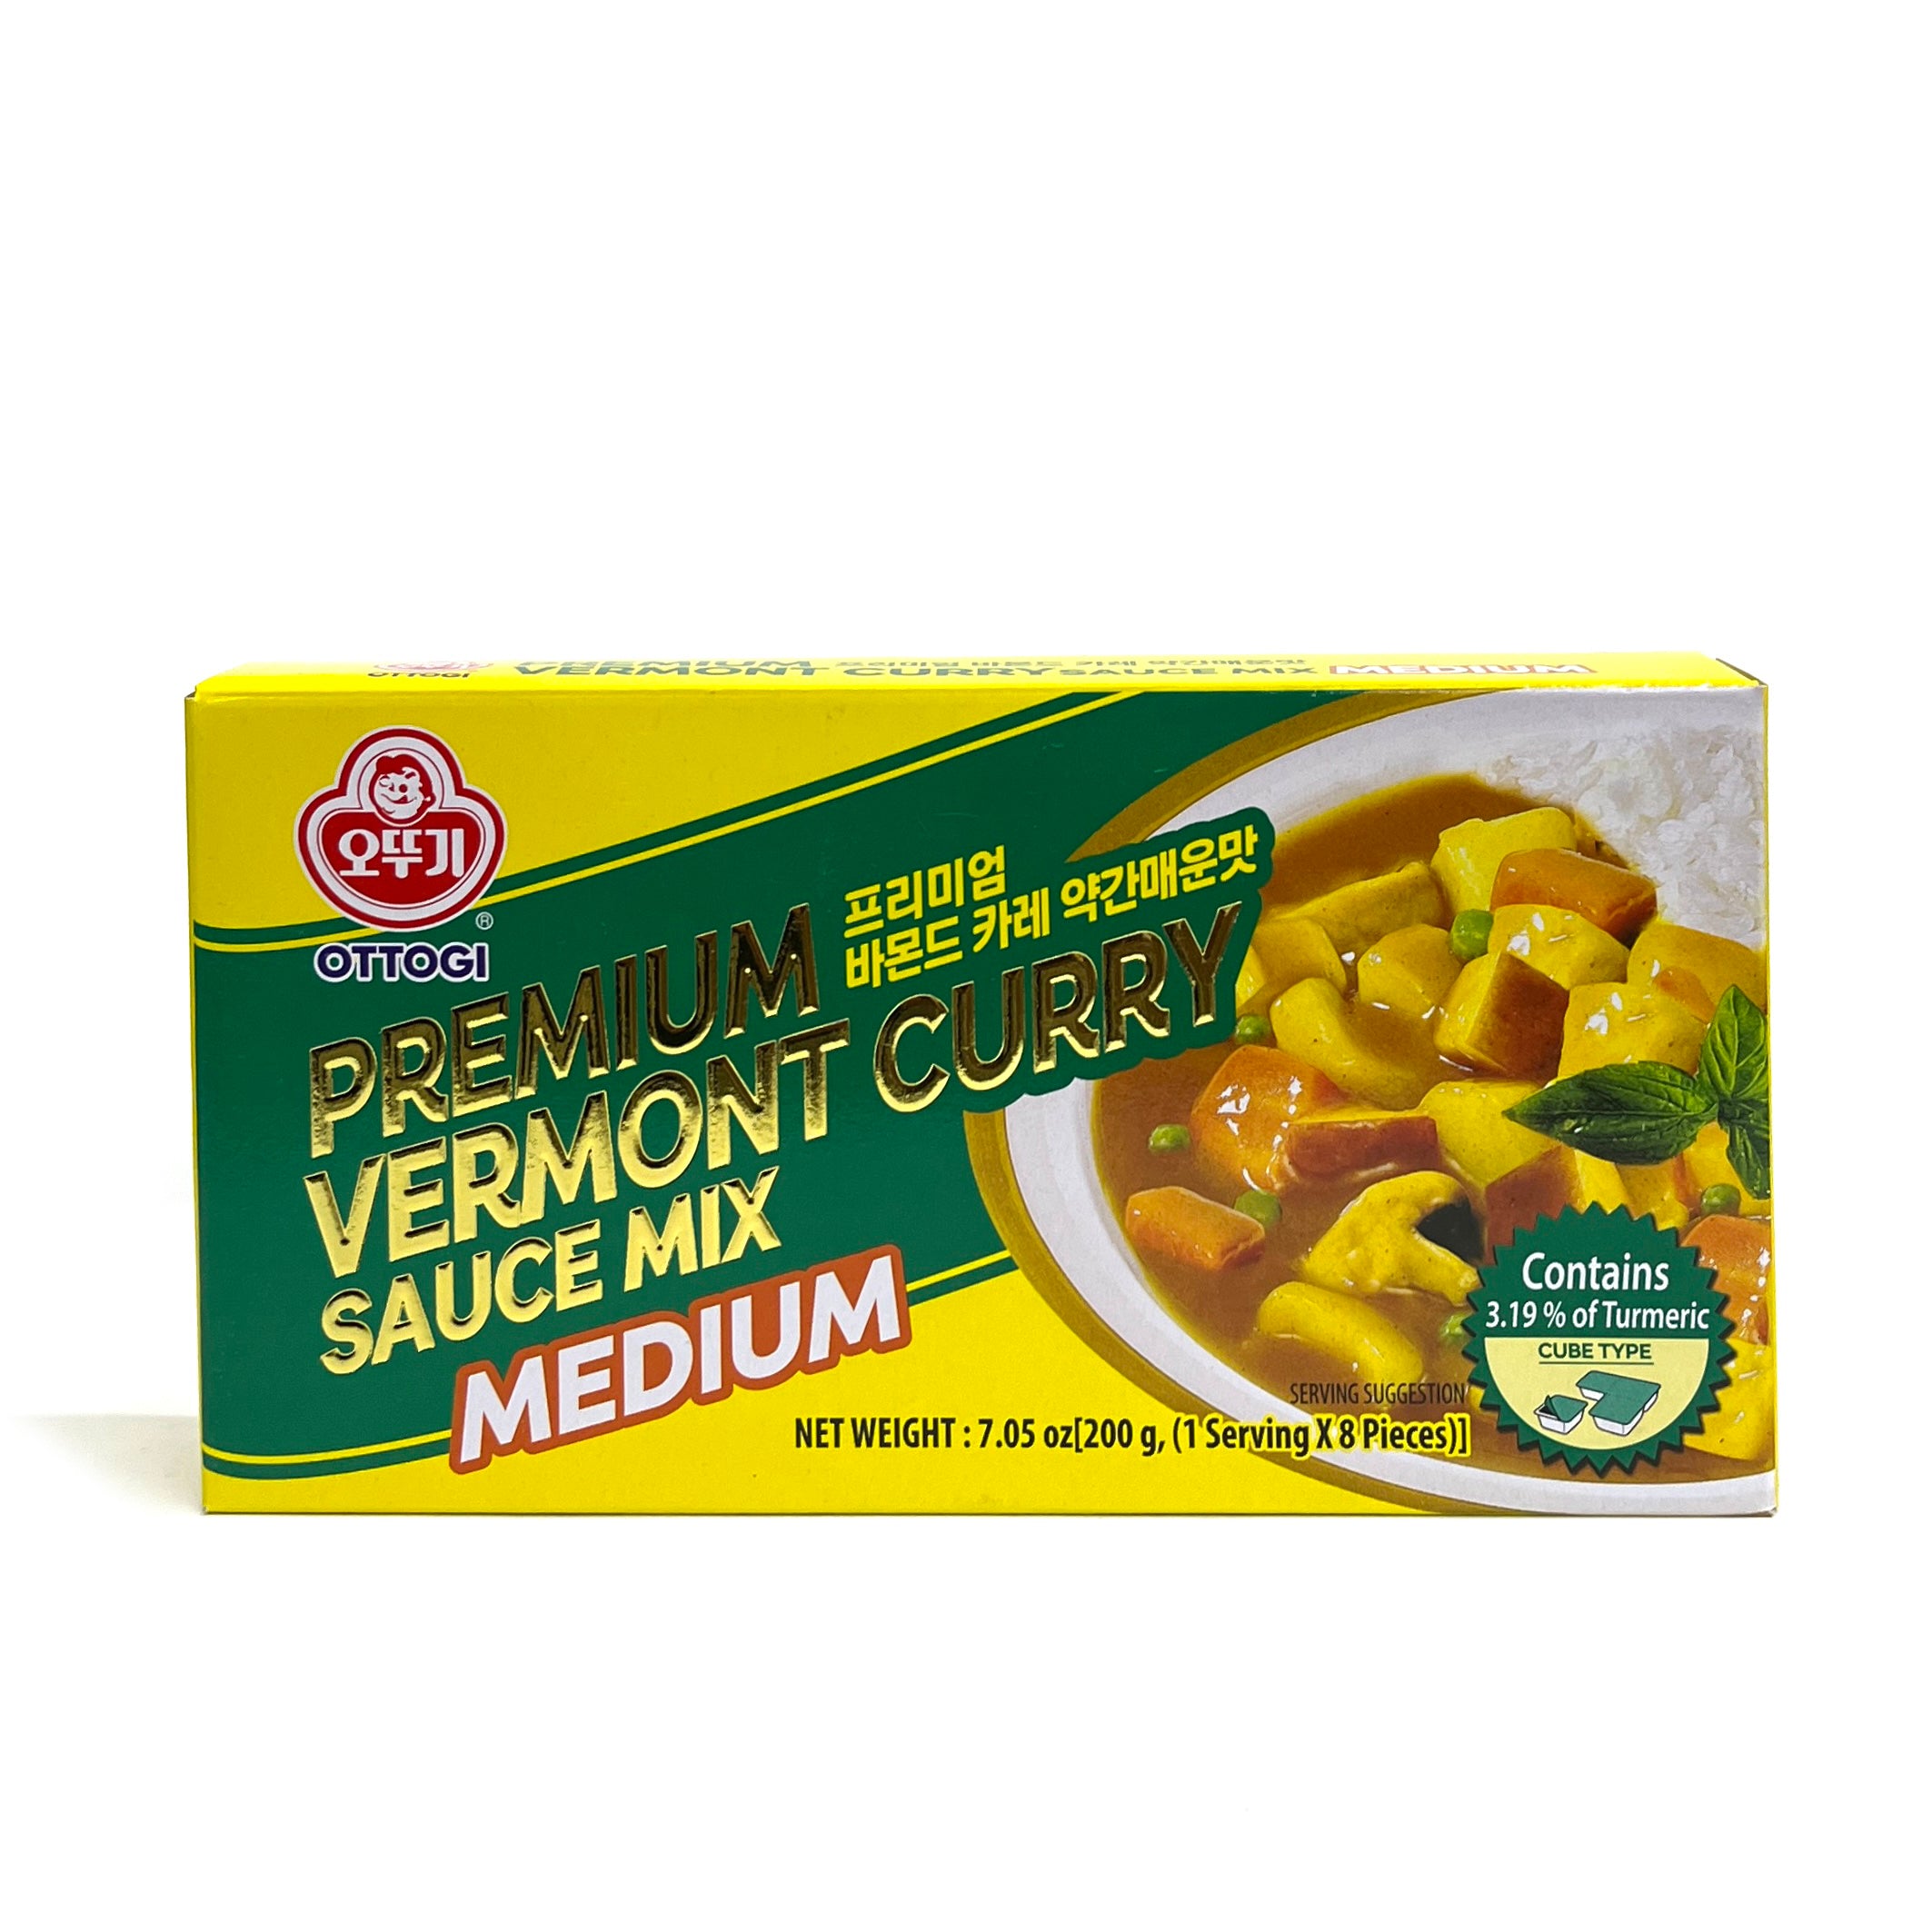 [Ottogi] Premium Vermont Curry Sauce Mix Medium / 오뚜기 프리미엄 바몬드 카레 약간 매